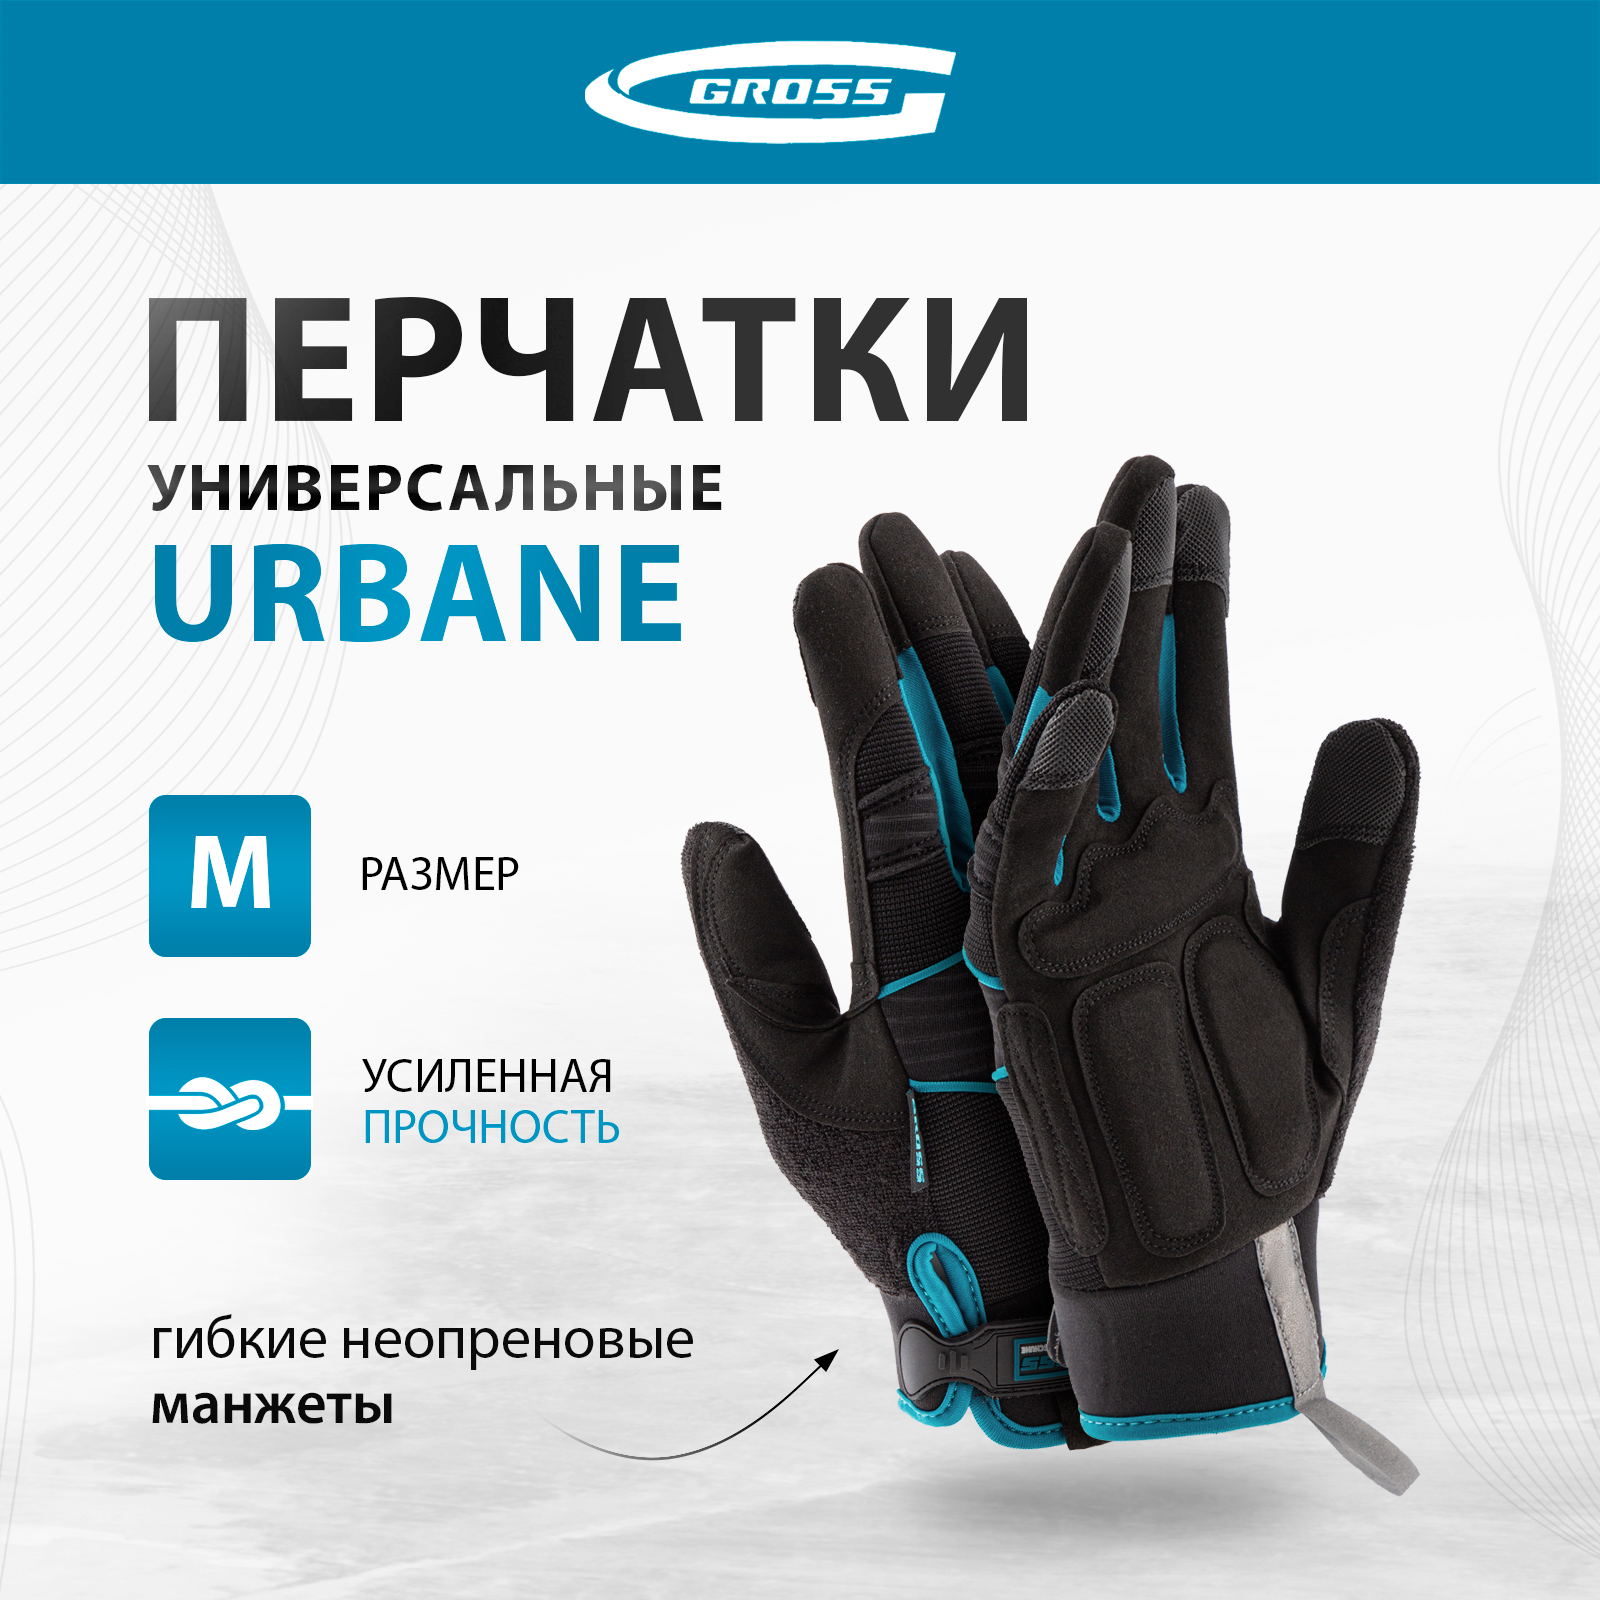 Перчатки универсальные комбинированные GROSS URBANE размер M (8) 90311 универсальные комбинированные плоскогубцы harden